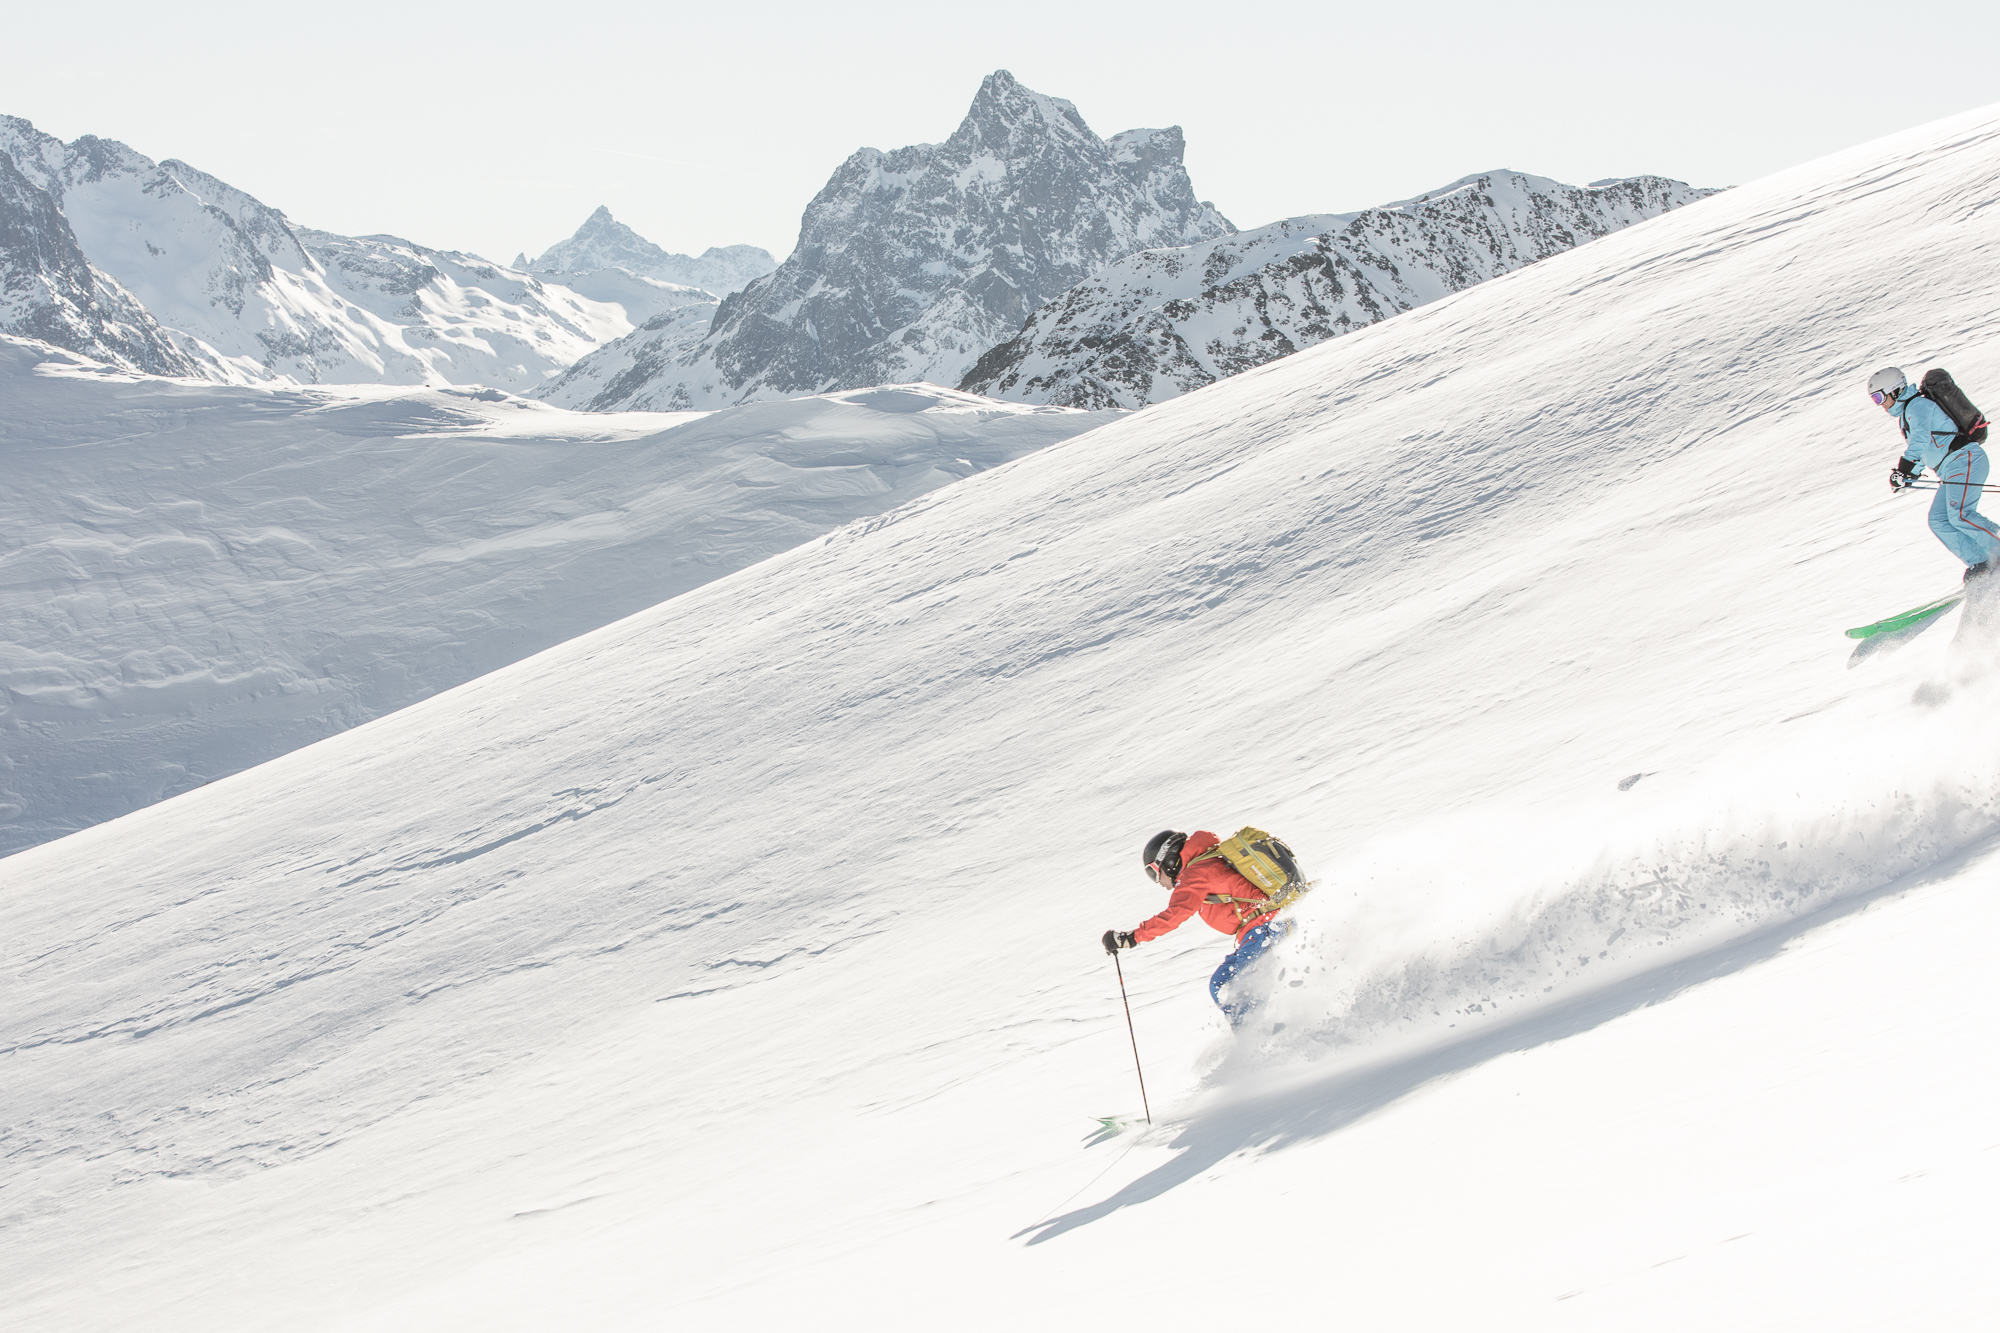 piste to powder mountain guides st anton lech zürs arlberg | privat bergführer und ski guides st anton